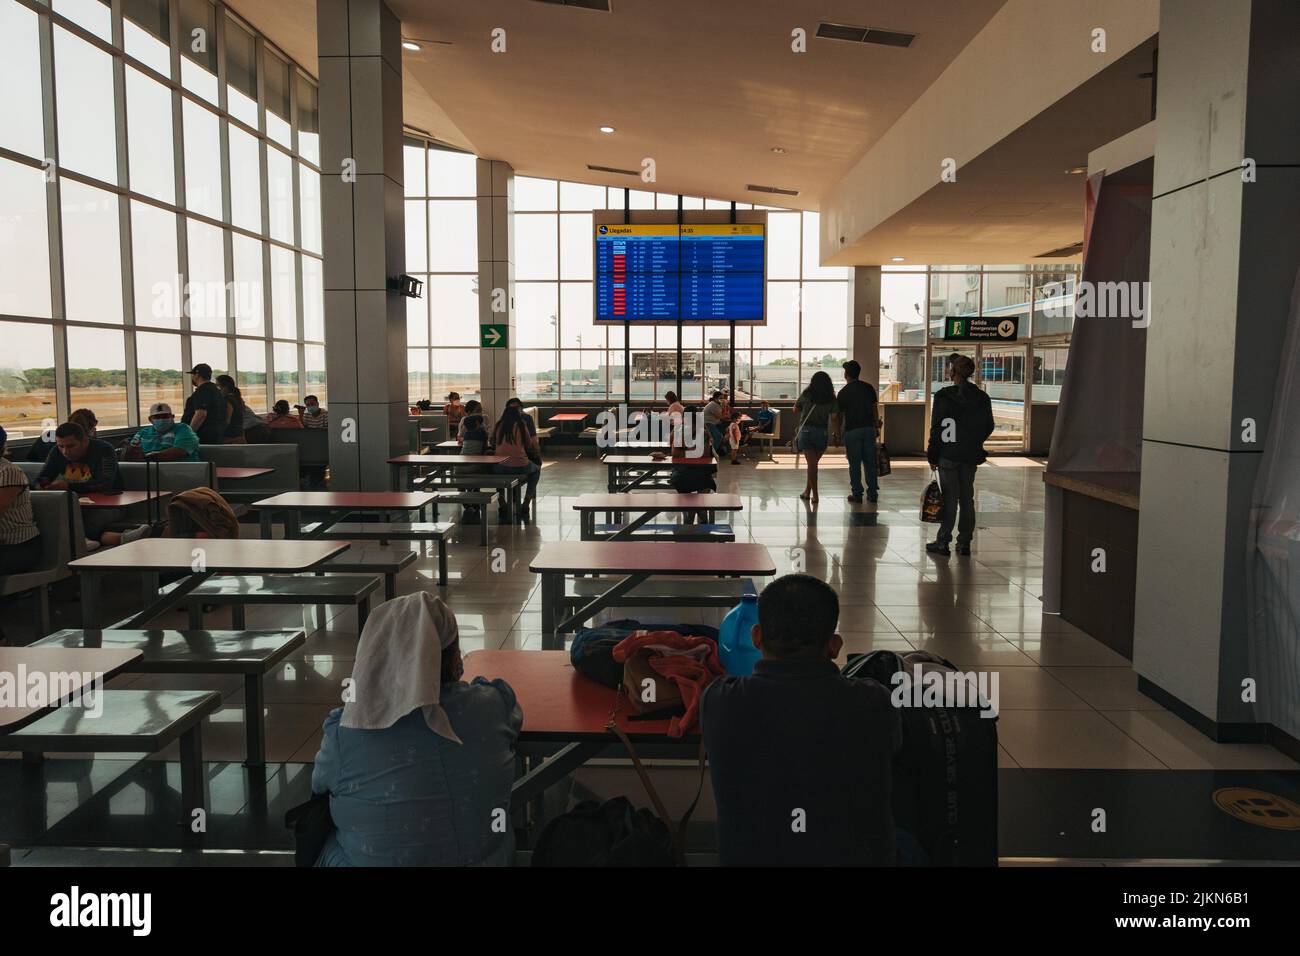 La sala de alimentación y el área de observación dentro de la terminal del Aeropuerto Internacional de El Salvador, El Salvador Foto de stock